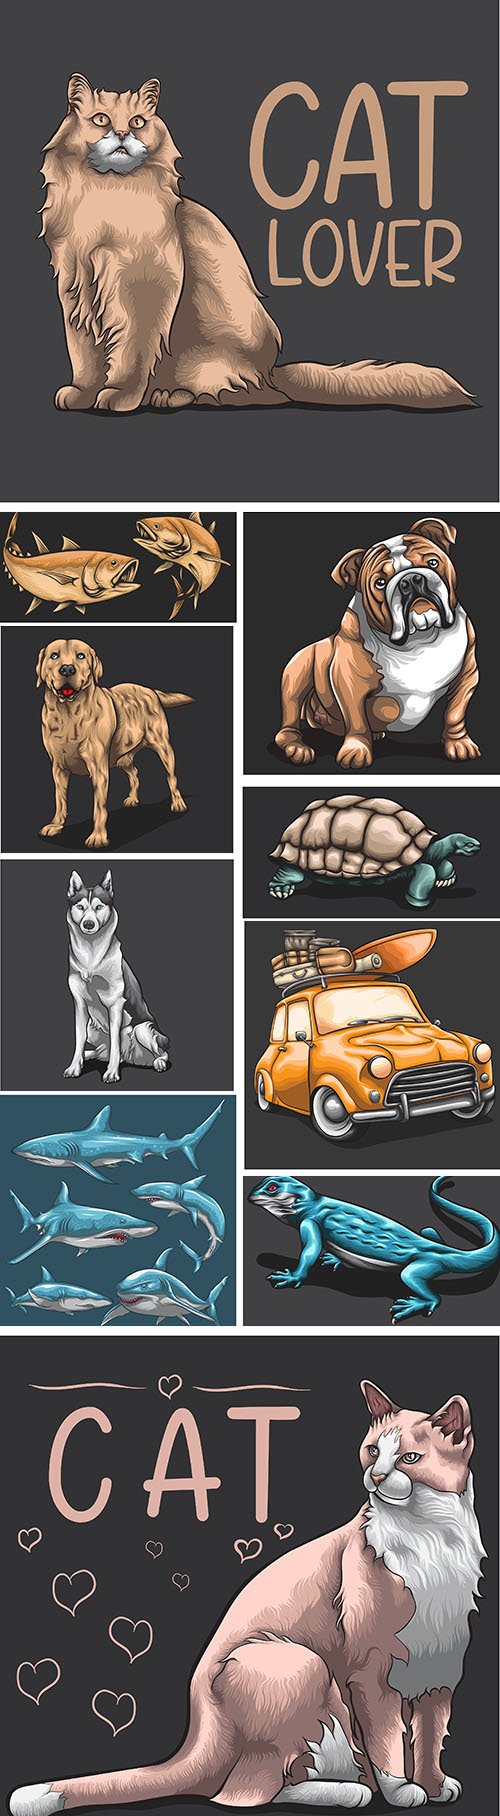 Animals concept cartoon design